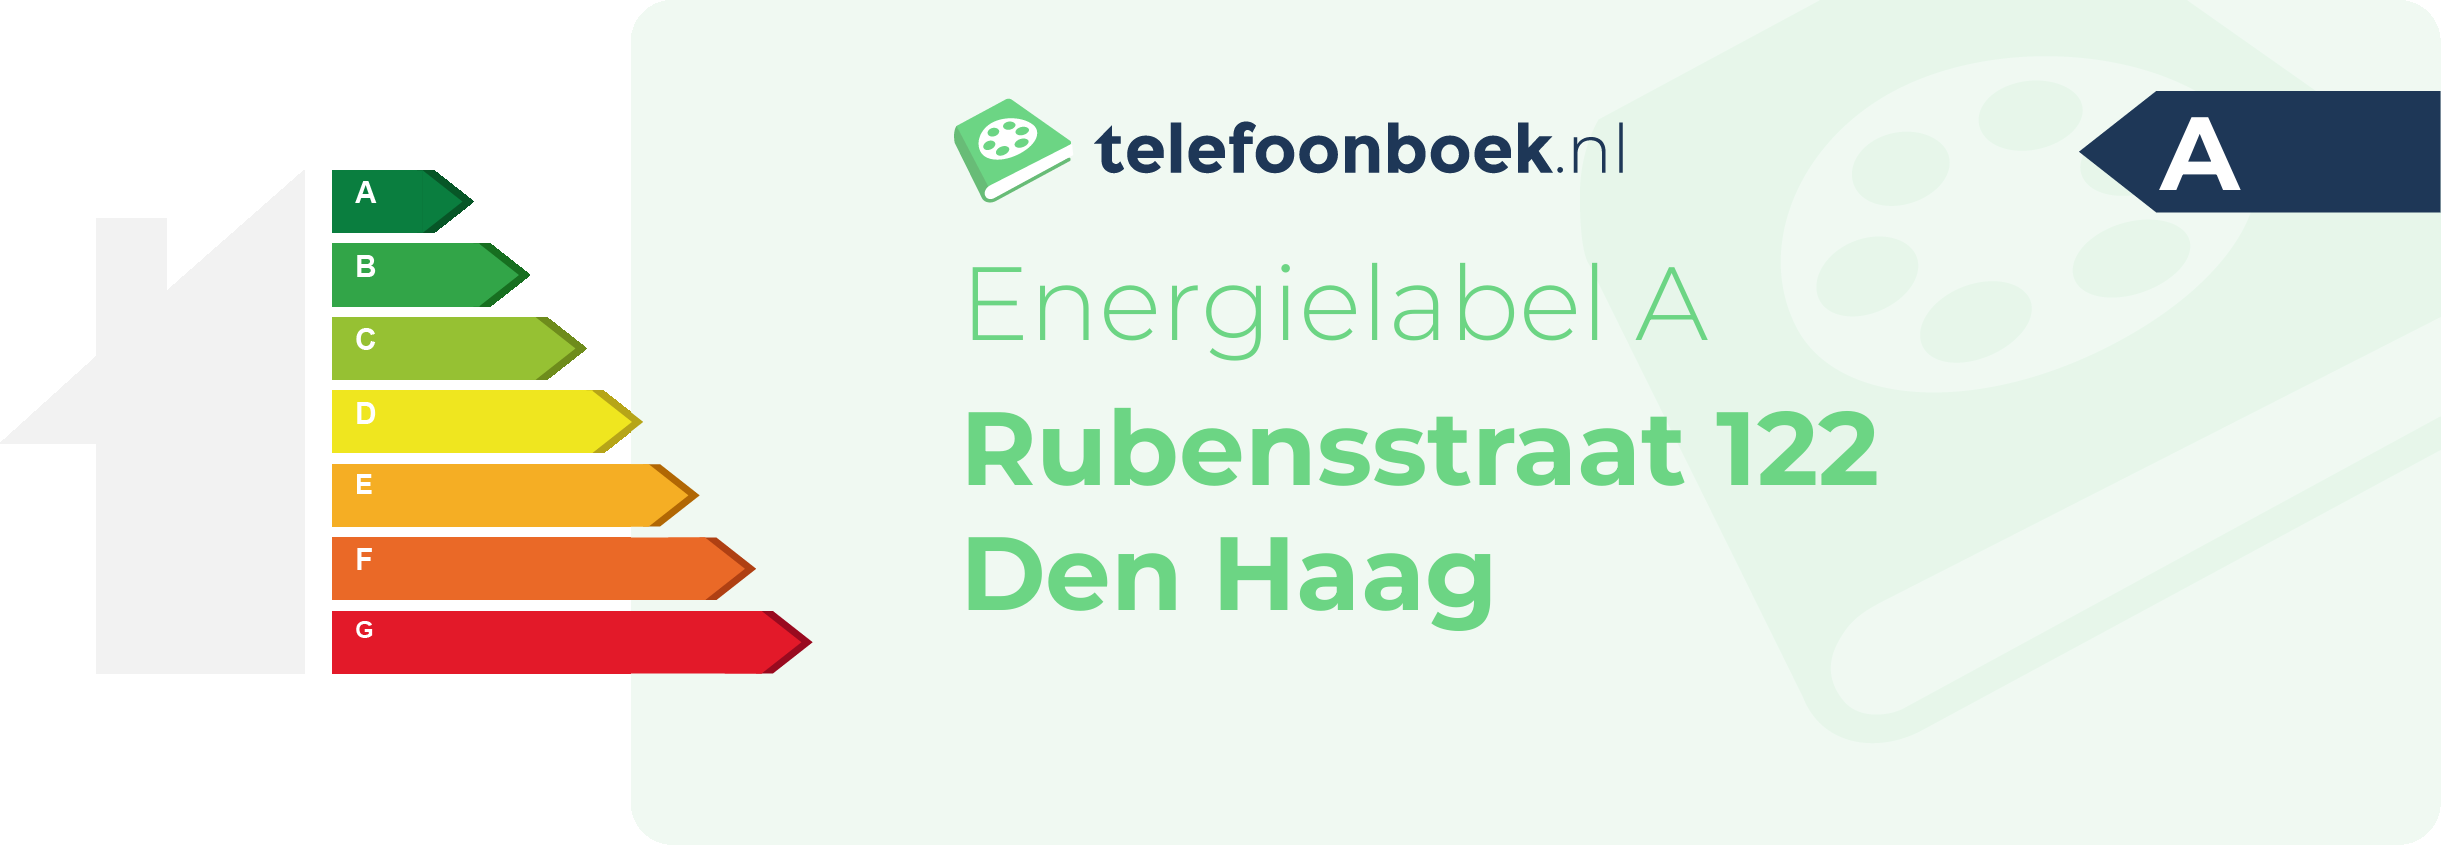 Energielabel Rubensstraat 122 Den Haag